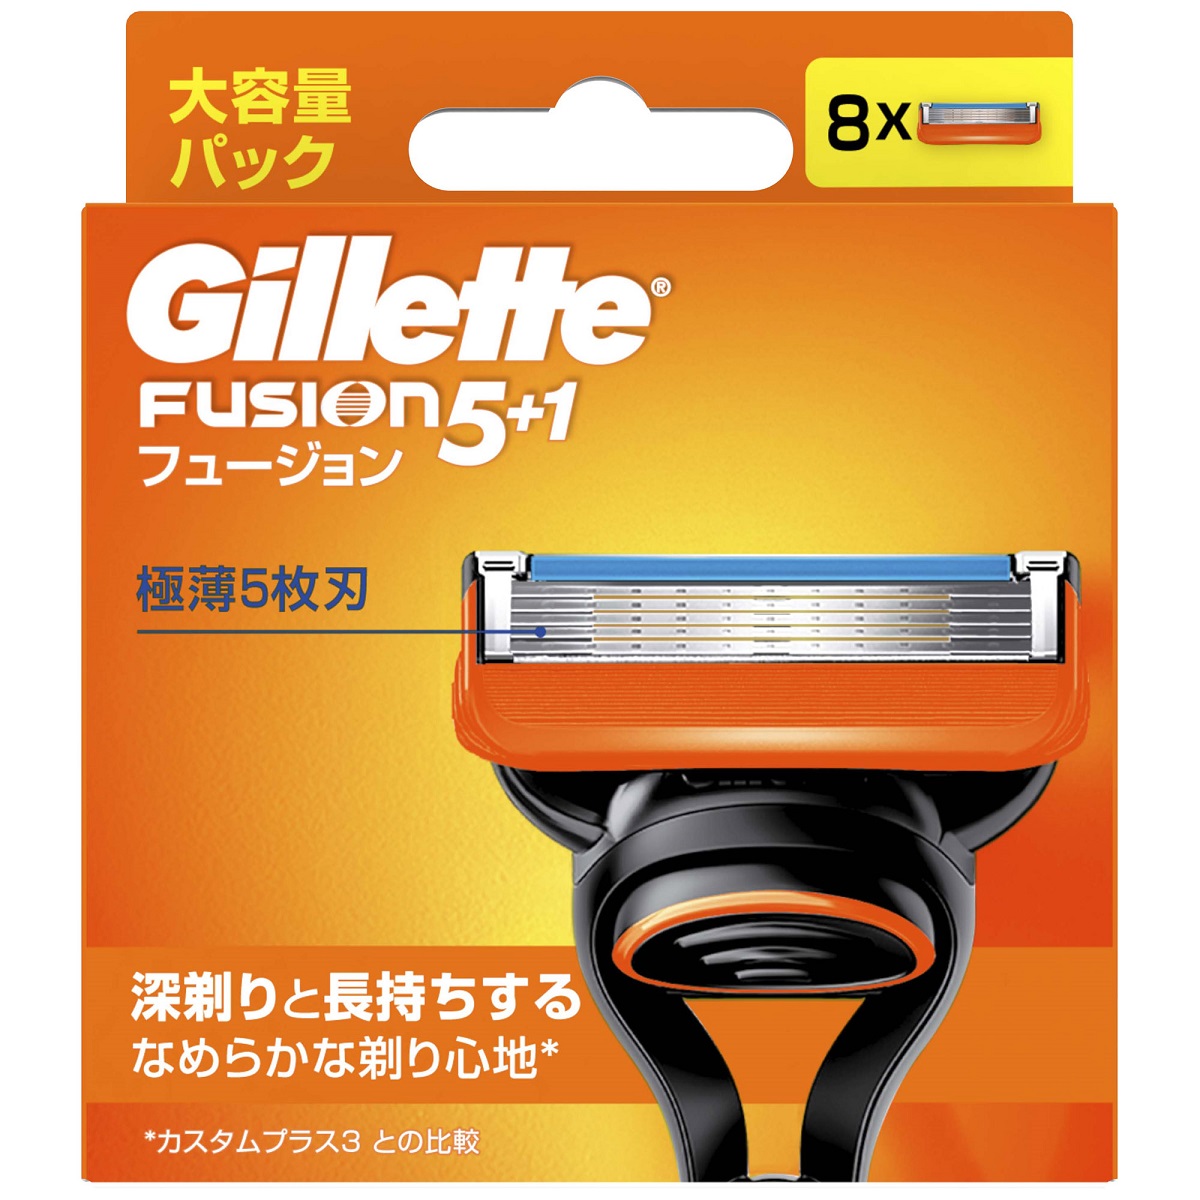 Set 8 lưỡi dao cạo râu thay thế Gillette Fusion 5+1 lưỡi kép (mẫu 2)  - Hàng Nhật nội điạ